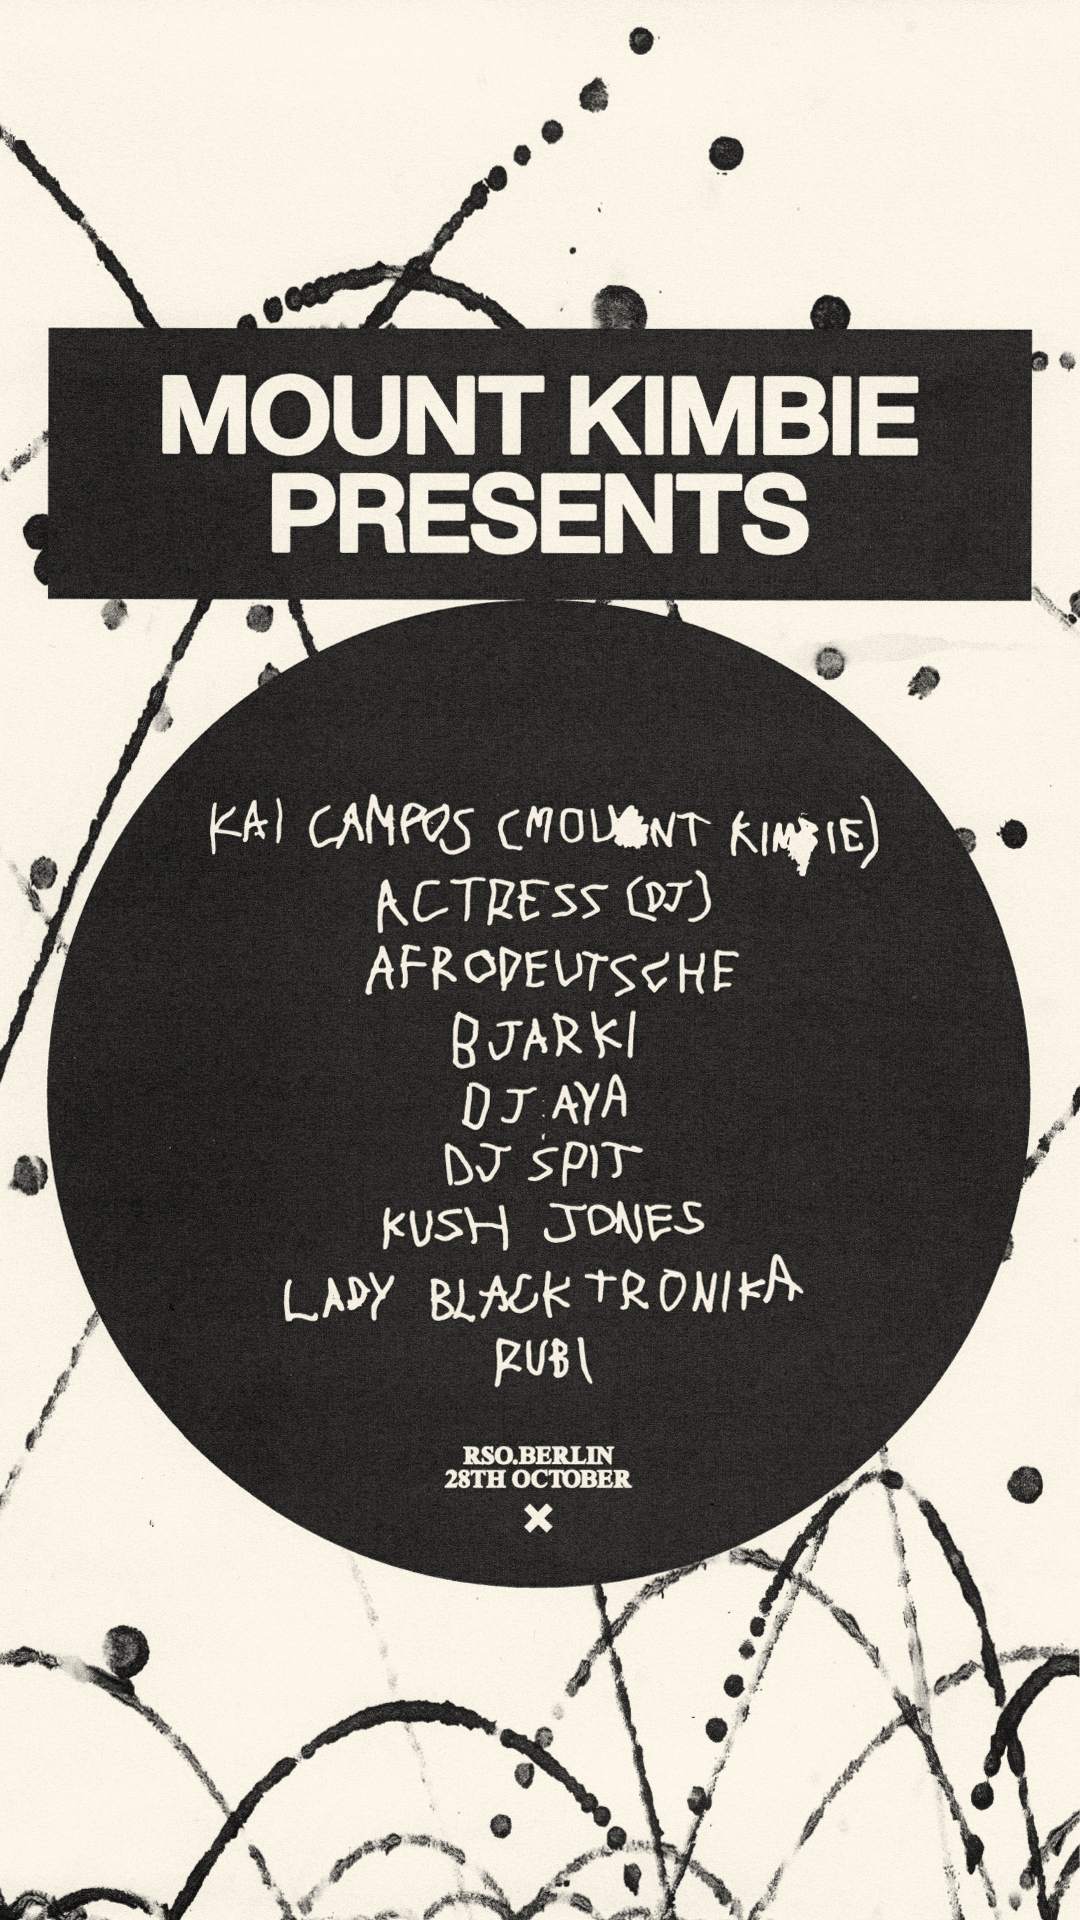 Mount Kimbie pres. Kai Campos, Actress, Afrodeutsche, Bjarki, DJ AYA, DJ Spit, Kush Jones  - フライヤー表